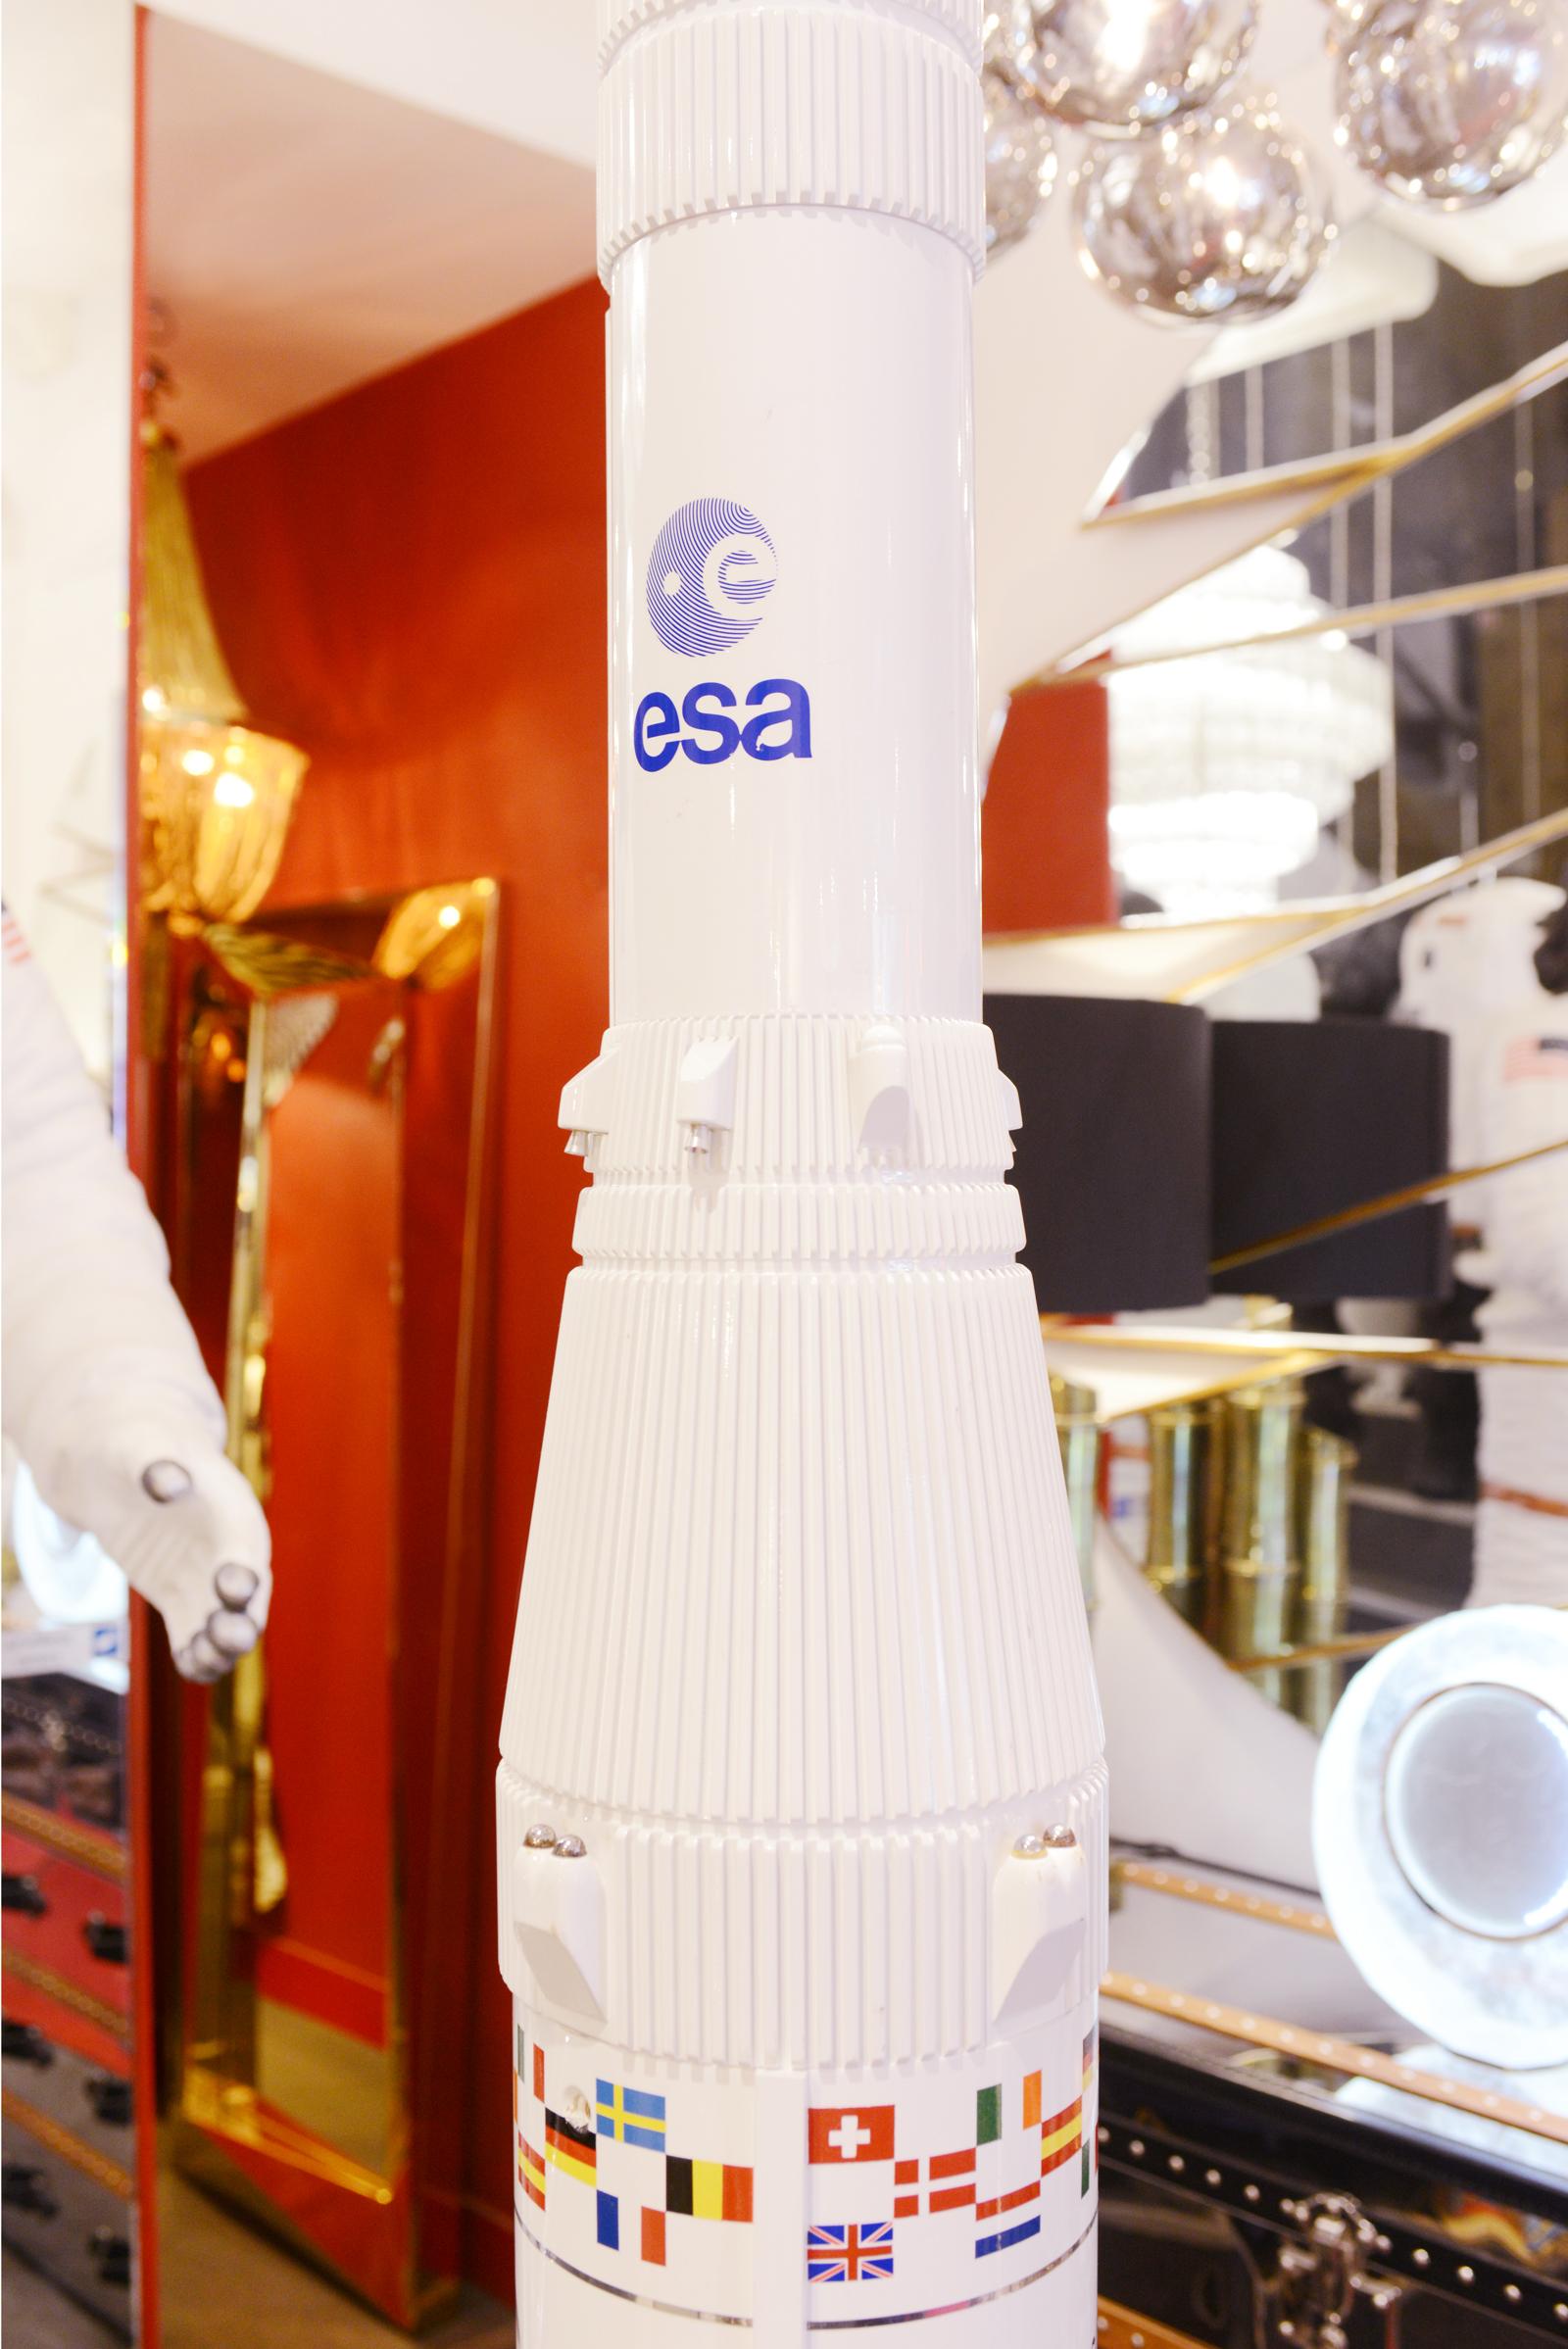 Cast Ariane IV 44lp Rocket Model on 1/20em Scale For Sale